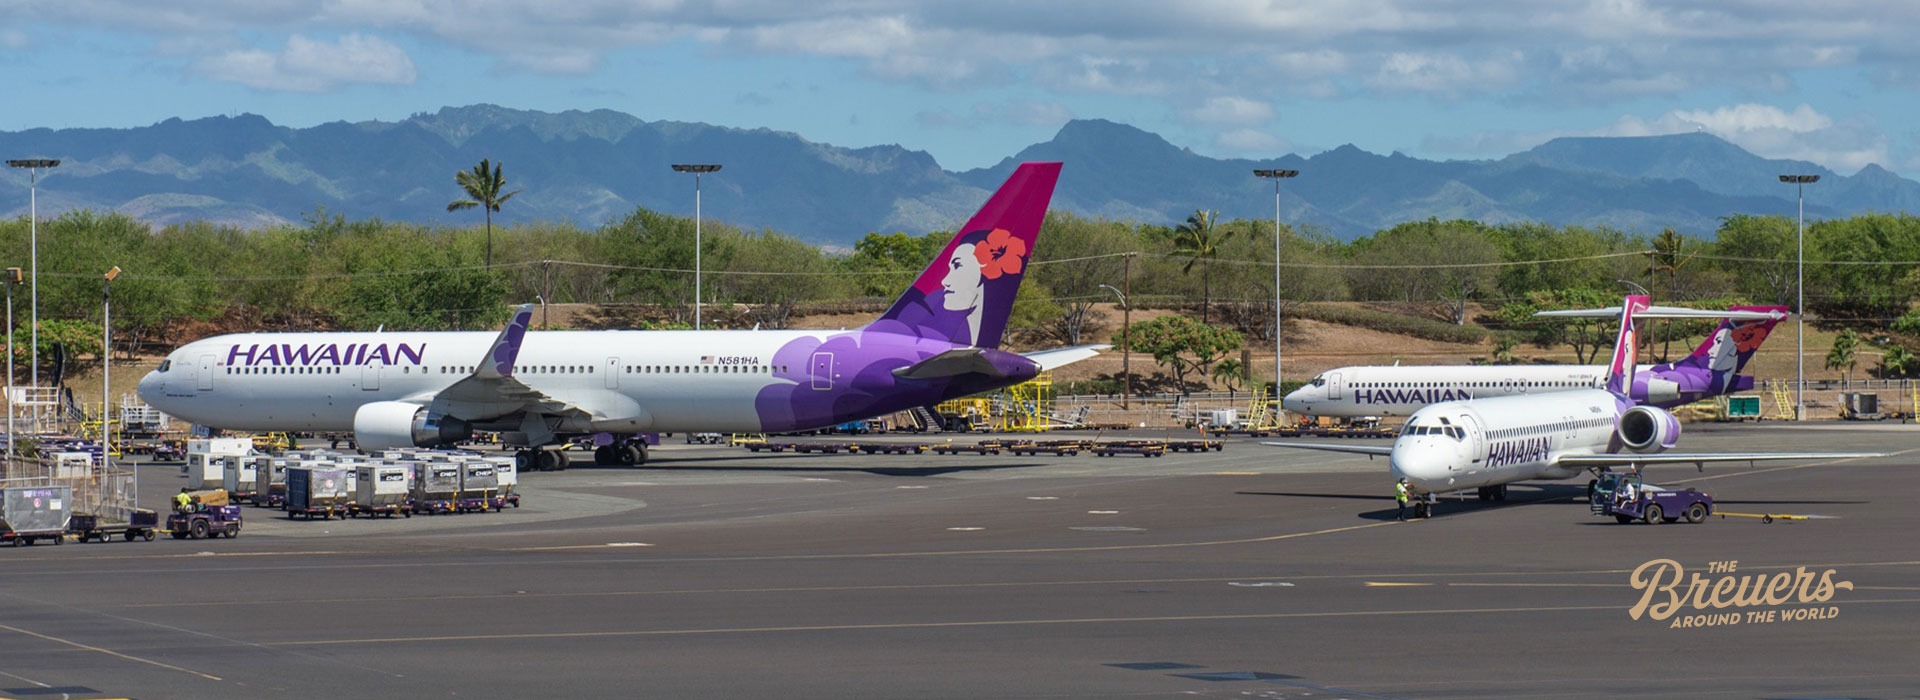 Flugzeug von Hawaiian Airlines auf dem Flughafen von Honolulu